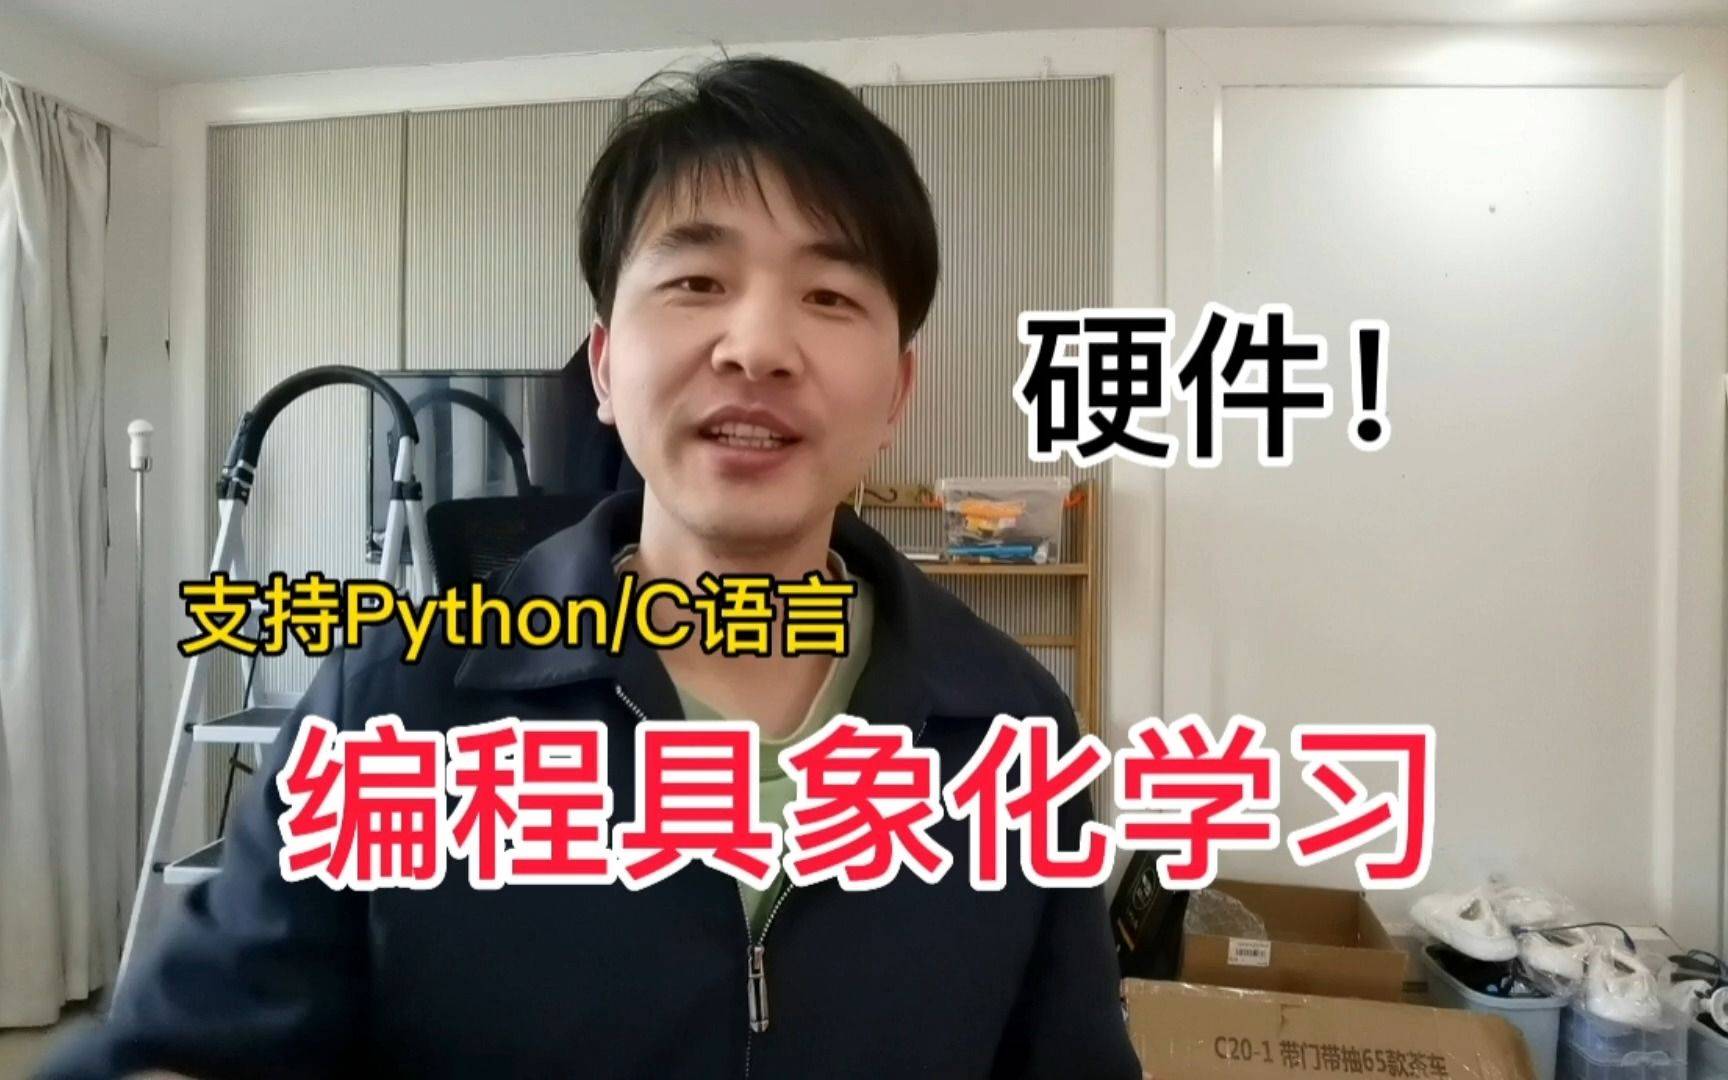 Python硬件开发板教程